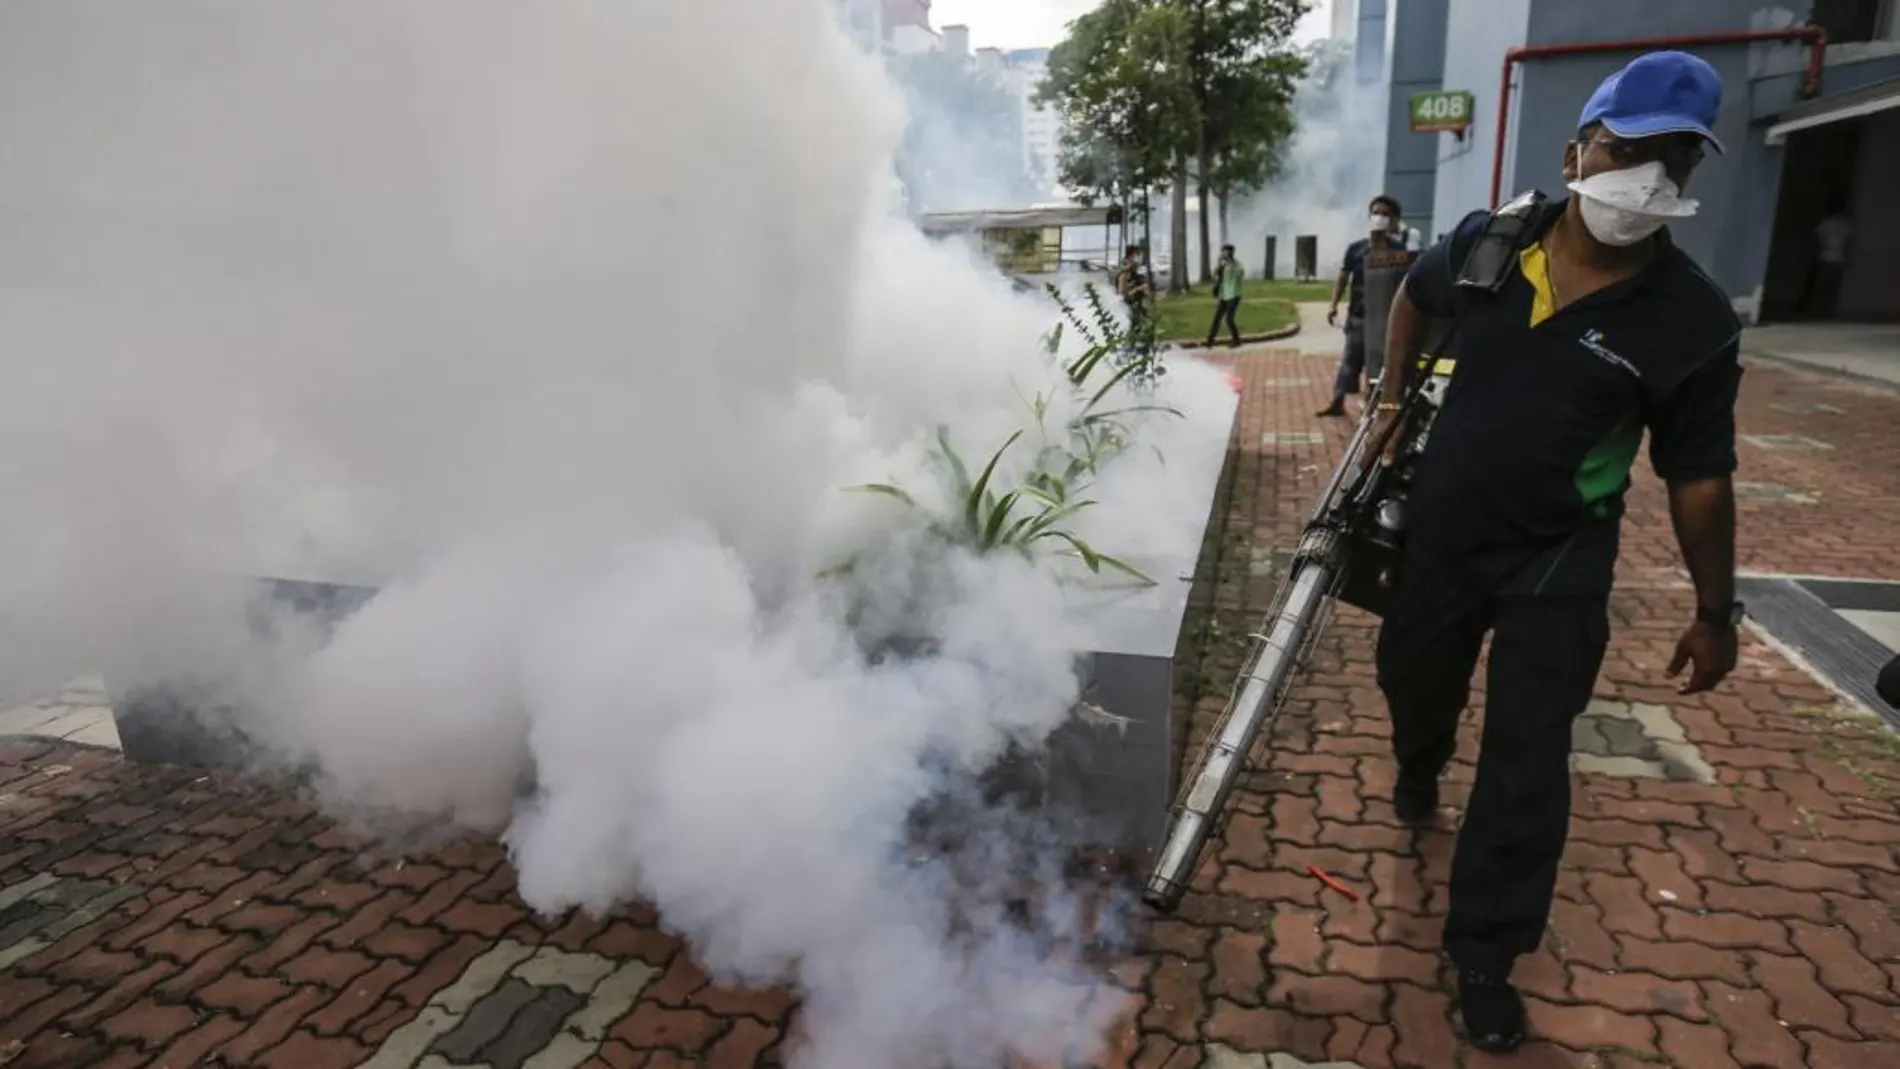 Labores de fumigación para prevernir la propagación del zika